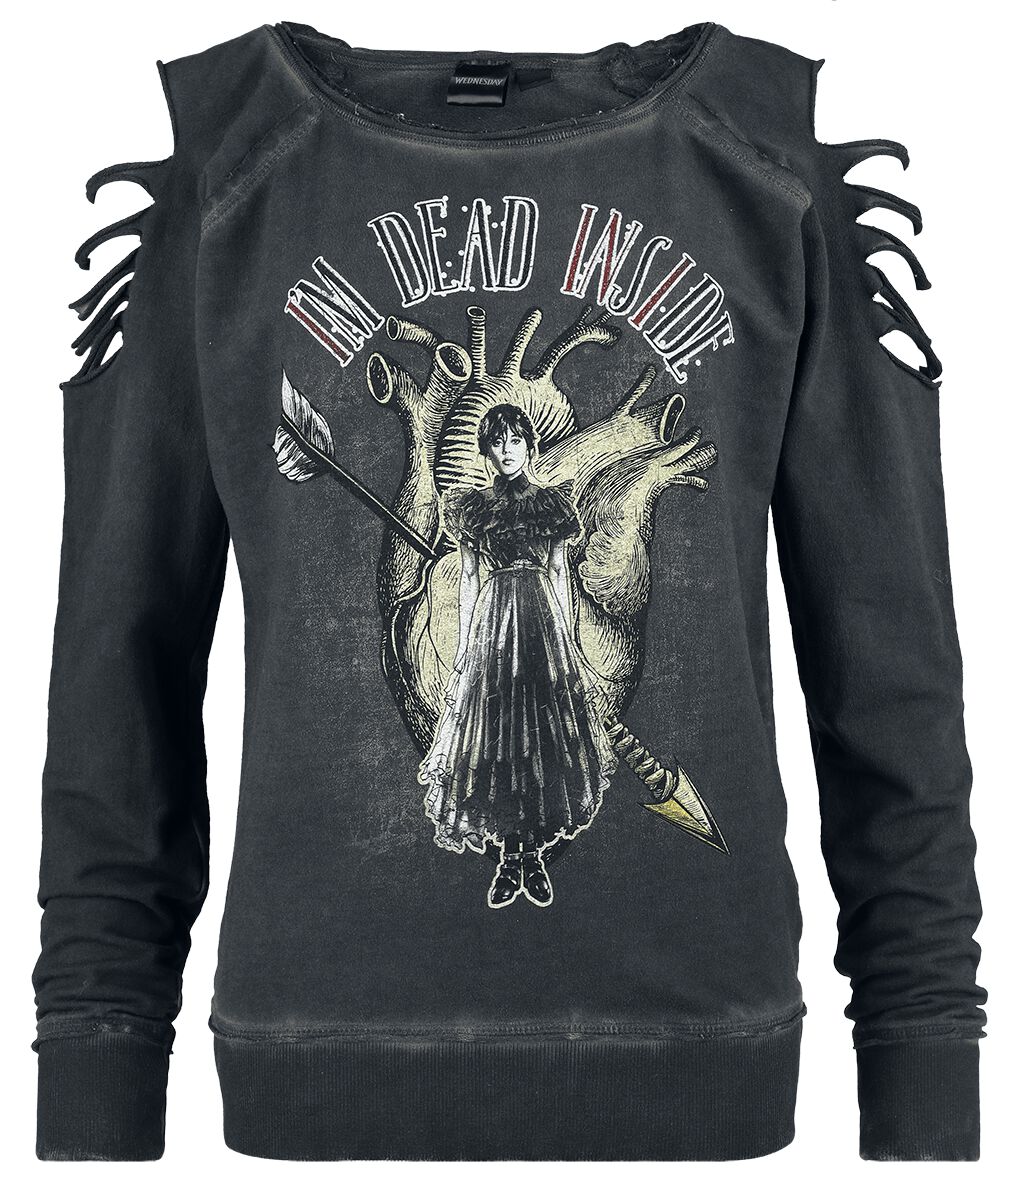 Wednesday Sweatshirt - I`m dead inside - S bis XXL - für Damen - Größe XXL - dunkelgrau  - EMP exklusives Merchandise!